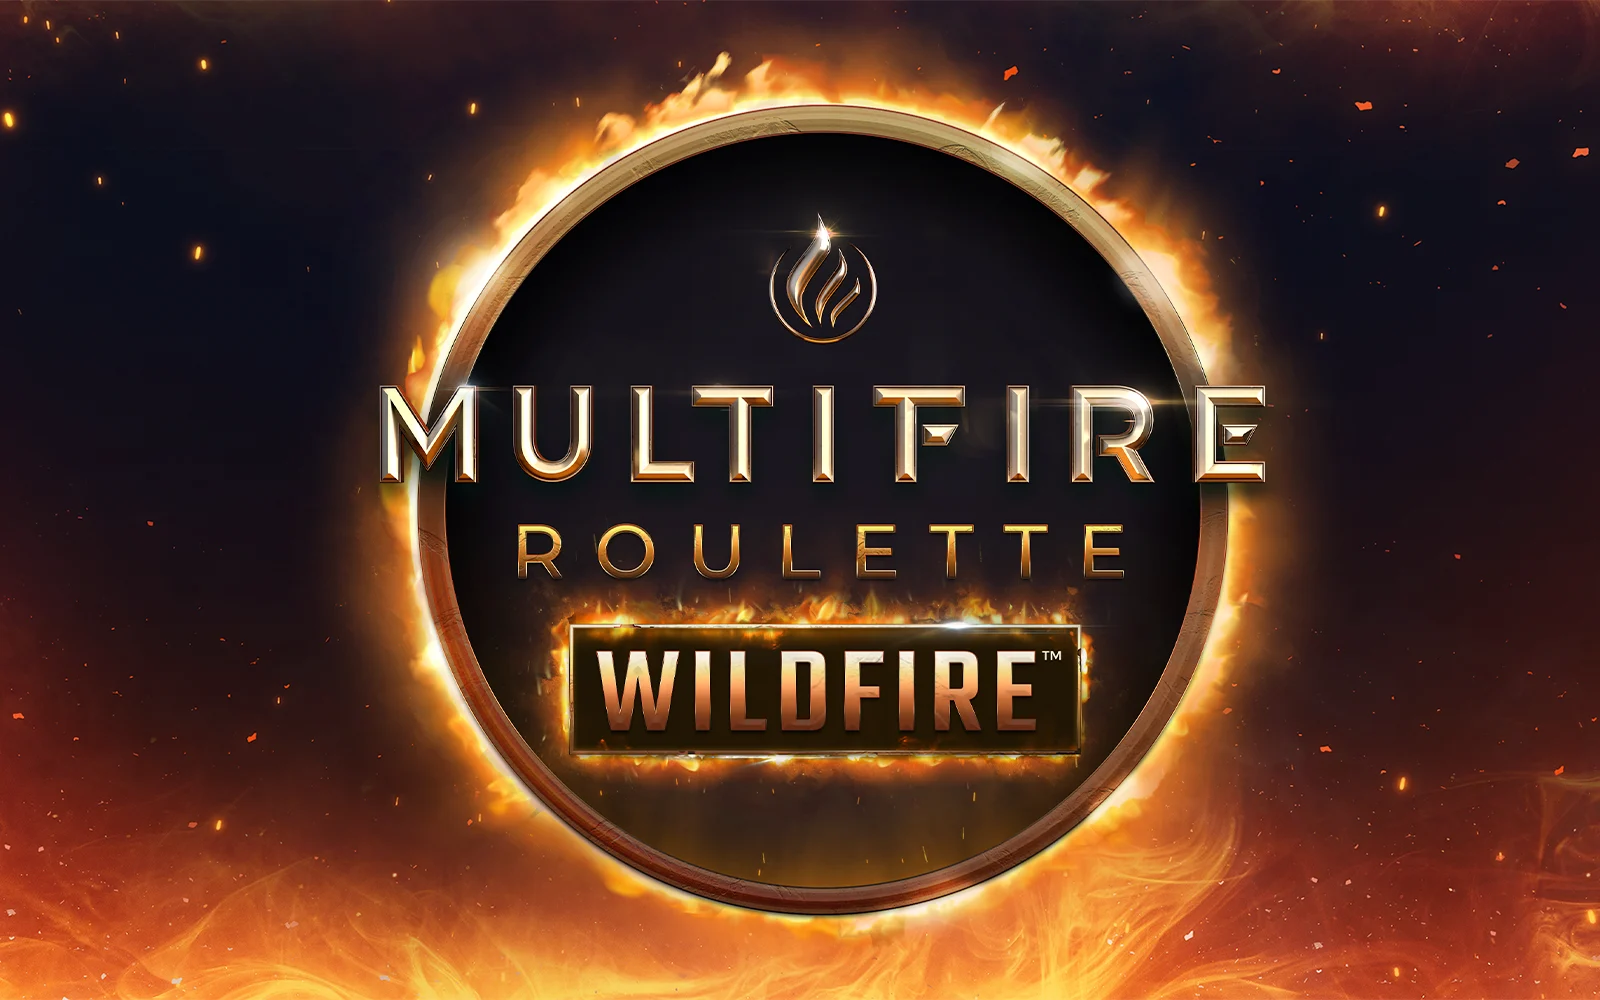 Zagraj w Multifire Roulette Wildfire™ w kasynie online Starcasino.be